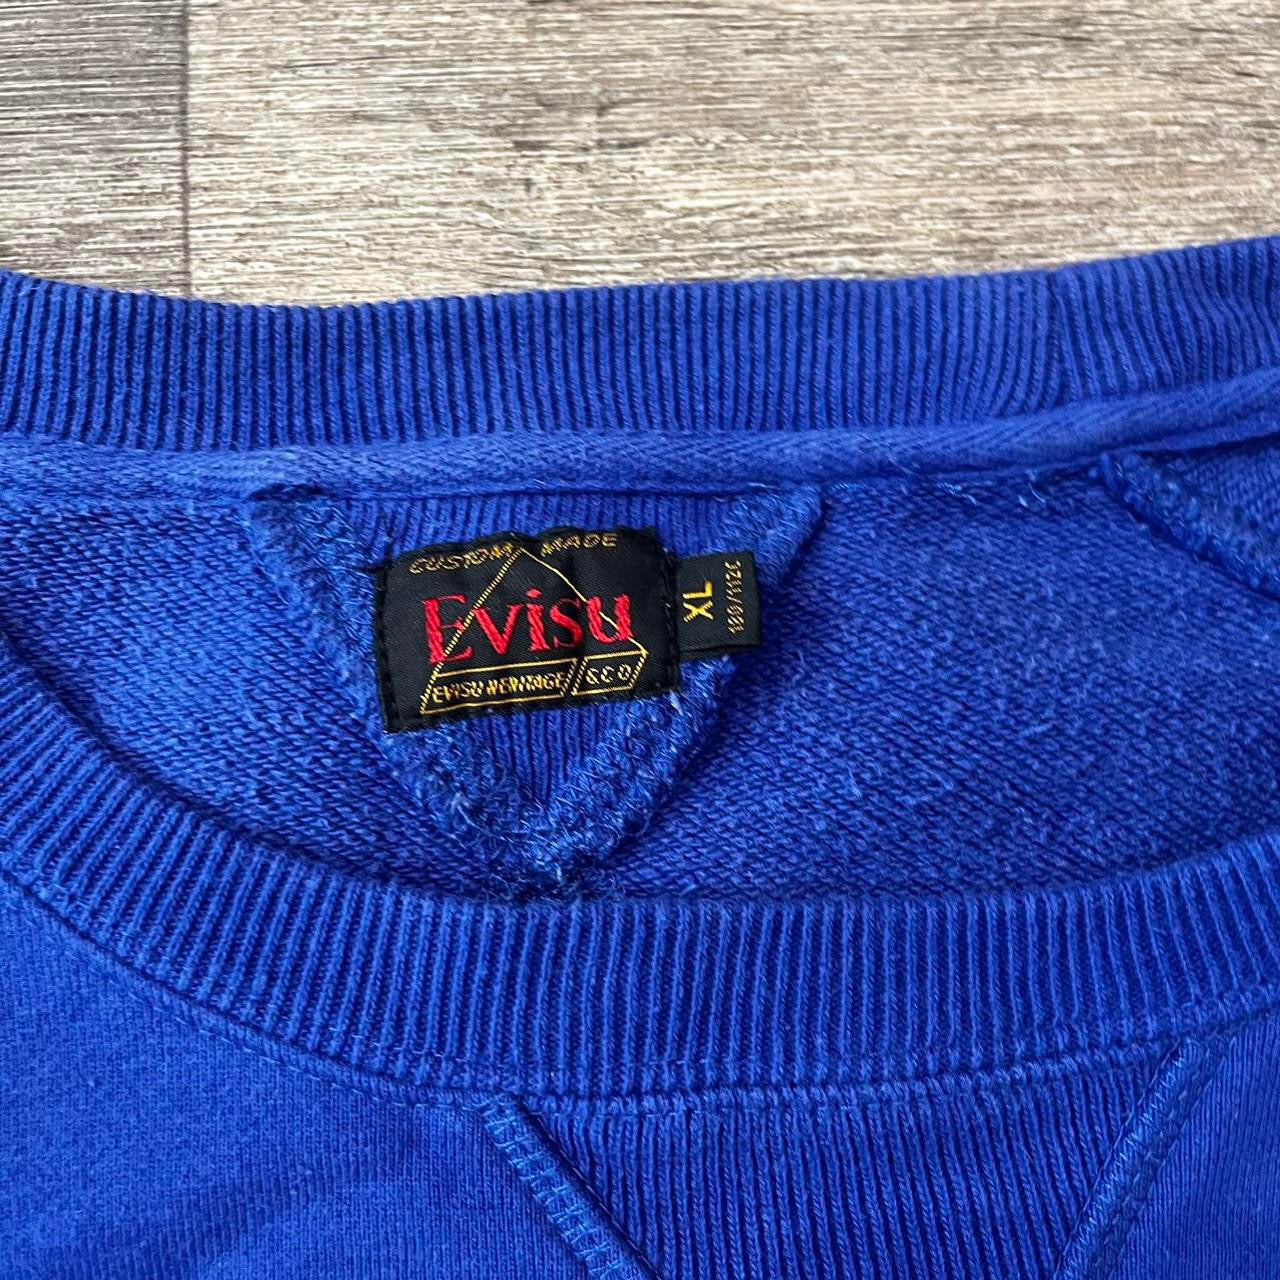 Evisu jumper (XL)